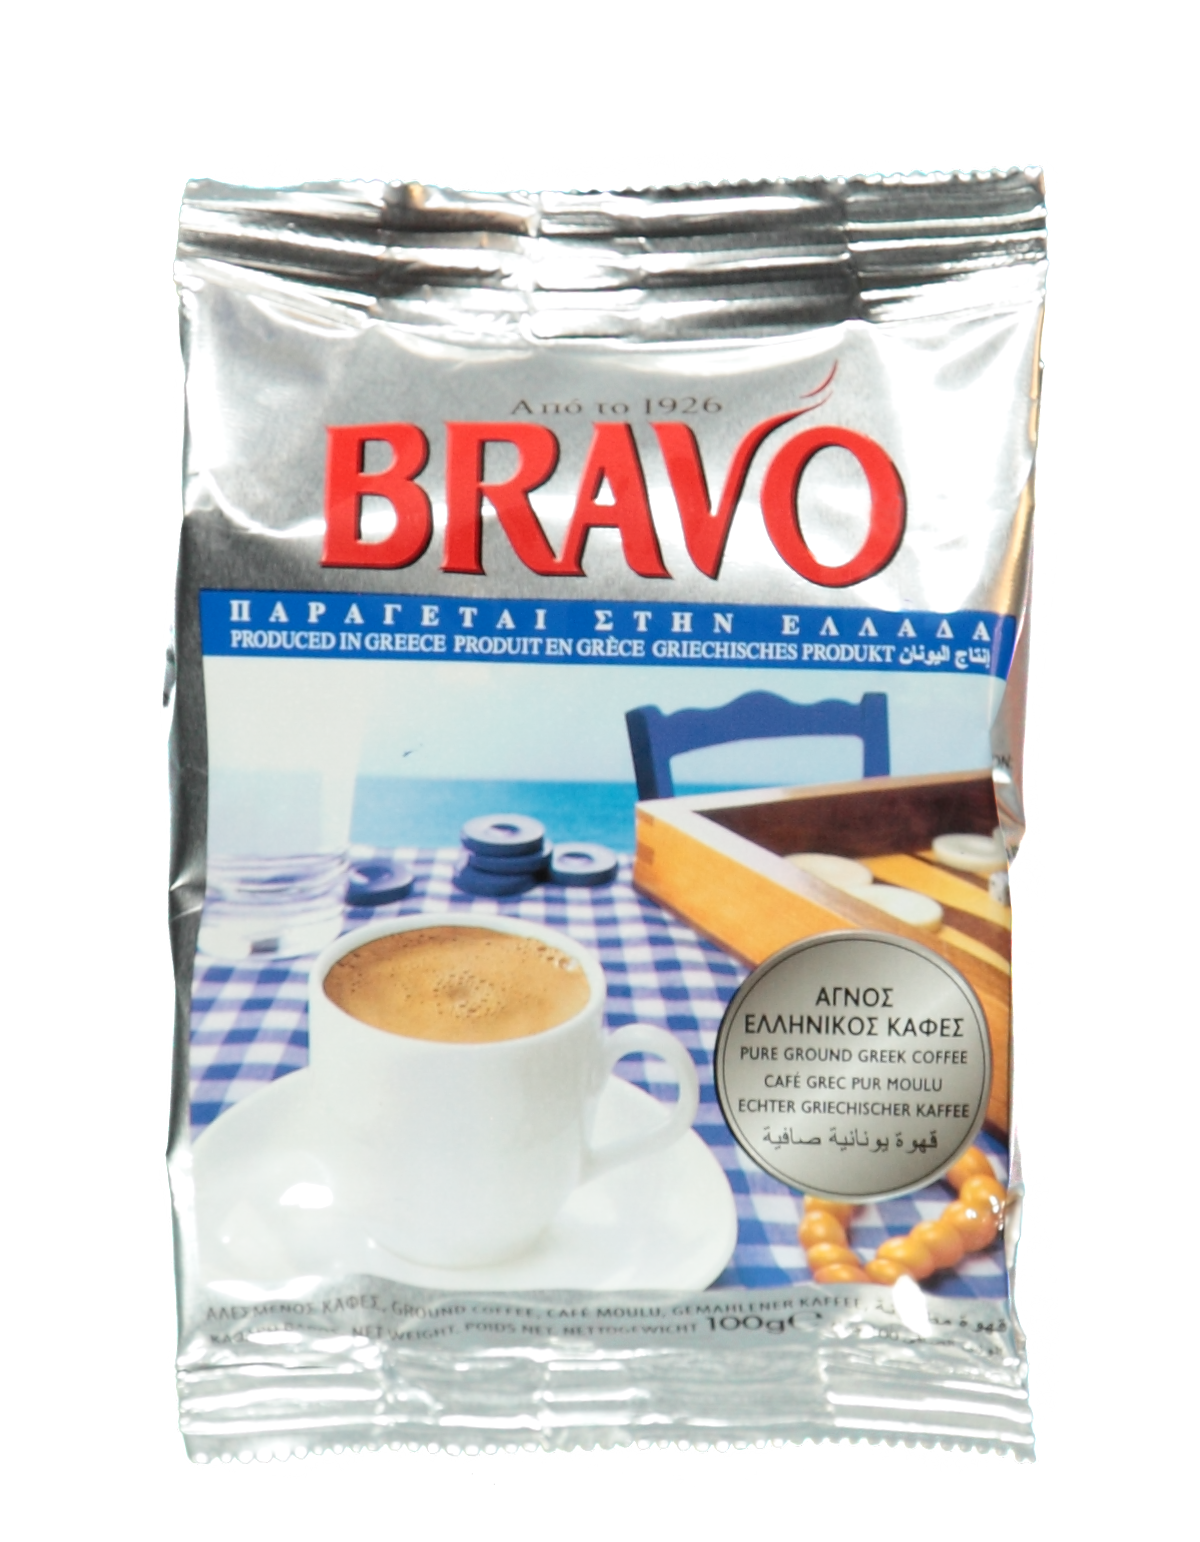 Griechischer Mokka  Bravo Greece Kaffee  online kaufen  